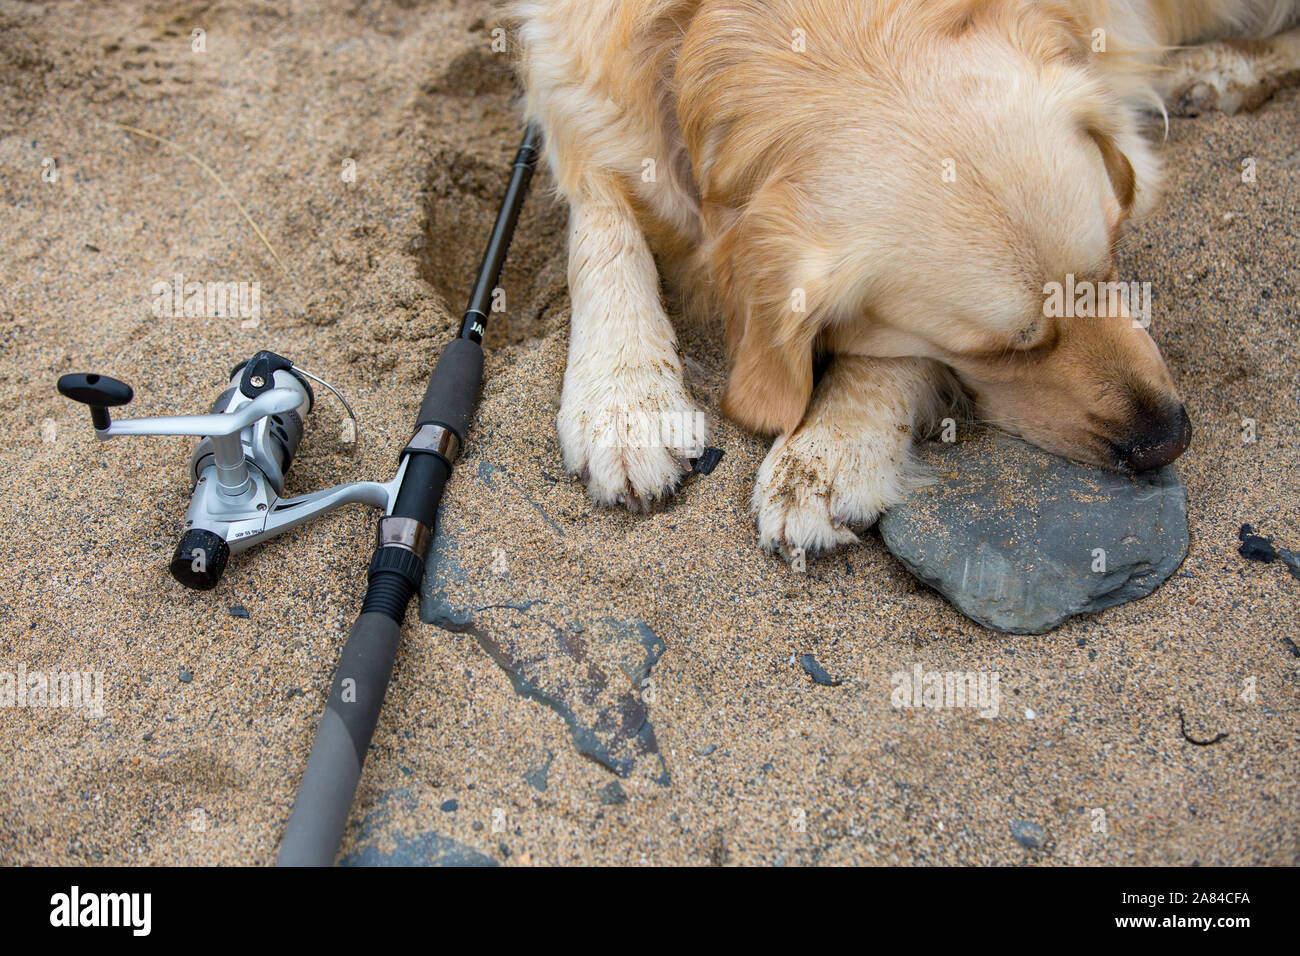 Ein Golden Retriever Hund liegend neben einer Angelrute und Haspel an einem Sandstrand. Stockfoto